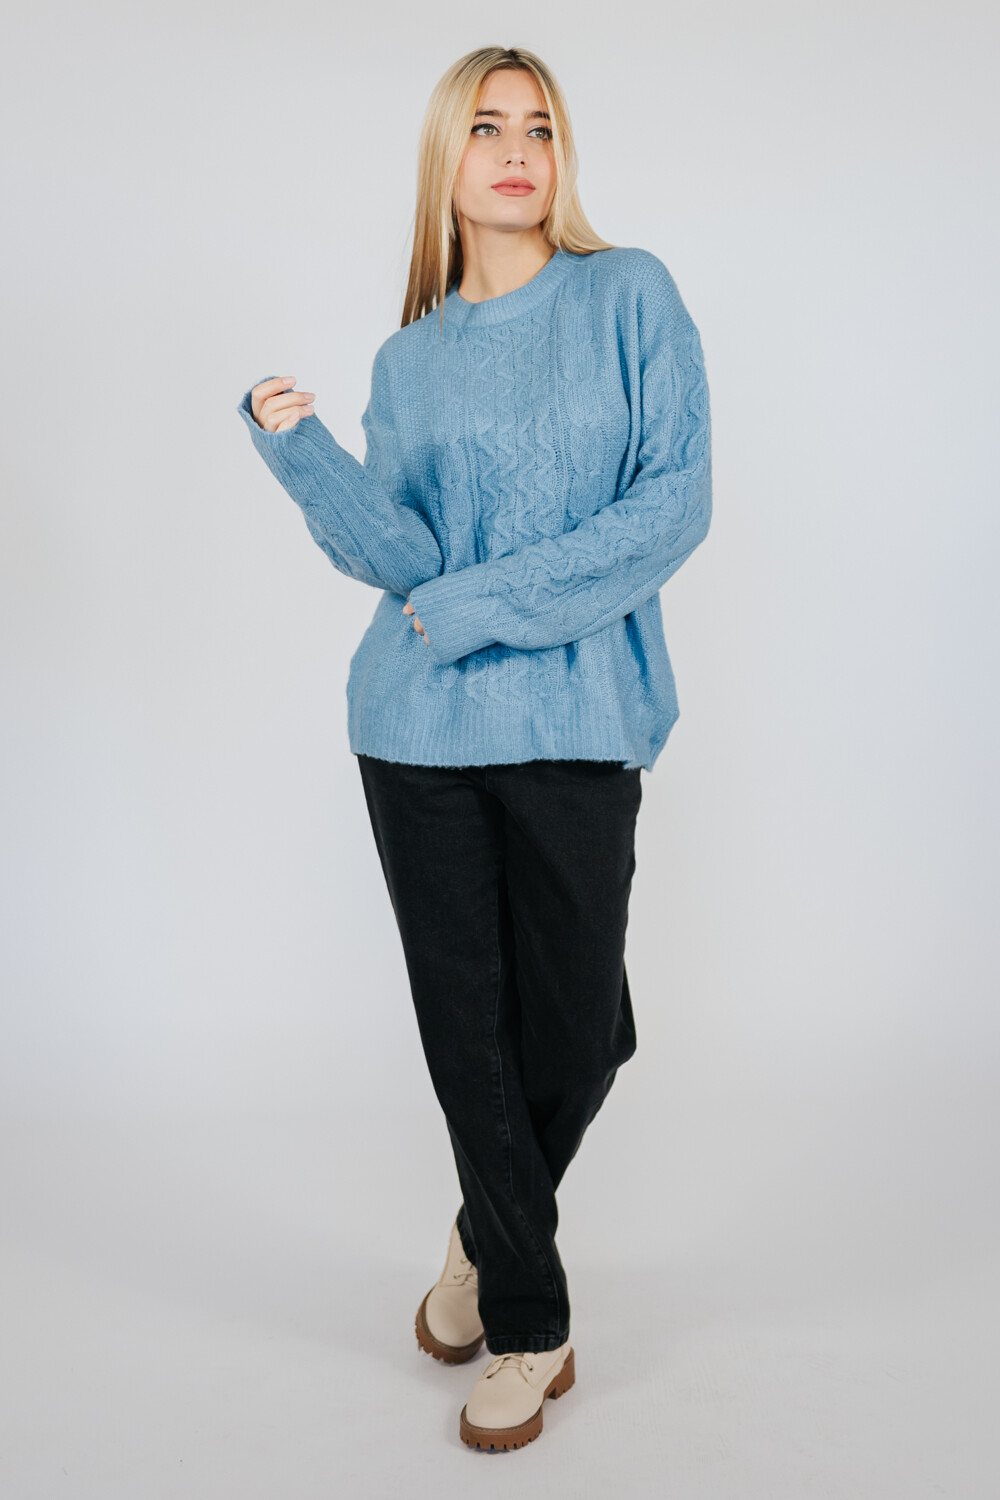 Sweater Cea 0203 Azul Grisaceo